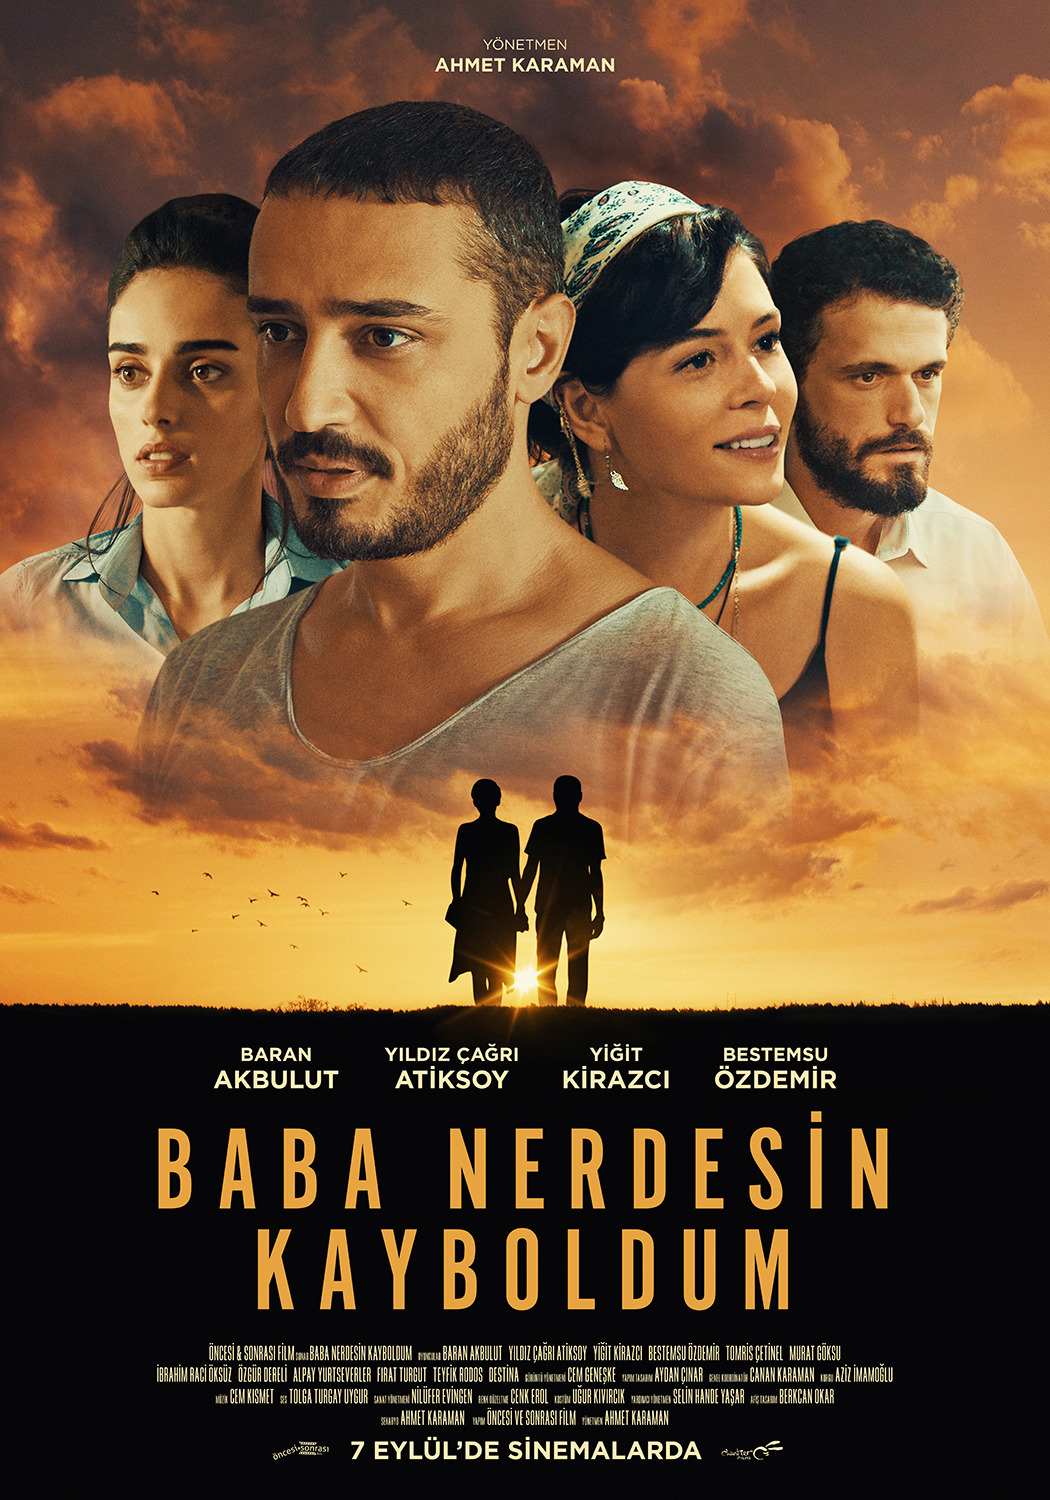 Extra Large Movie Poster Image for Baba Nerdesin Kayboldum (#5 of 5)